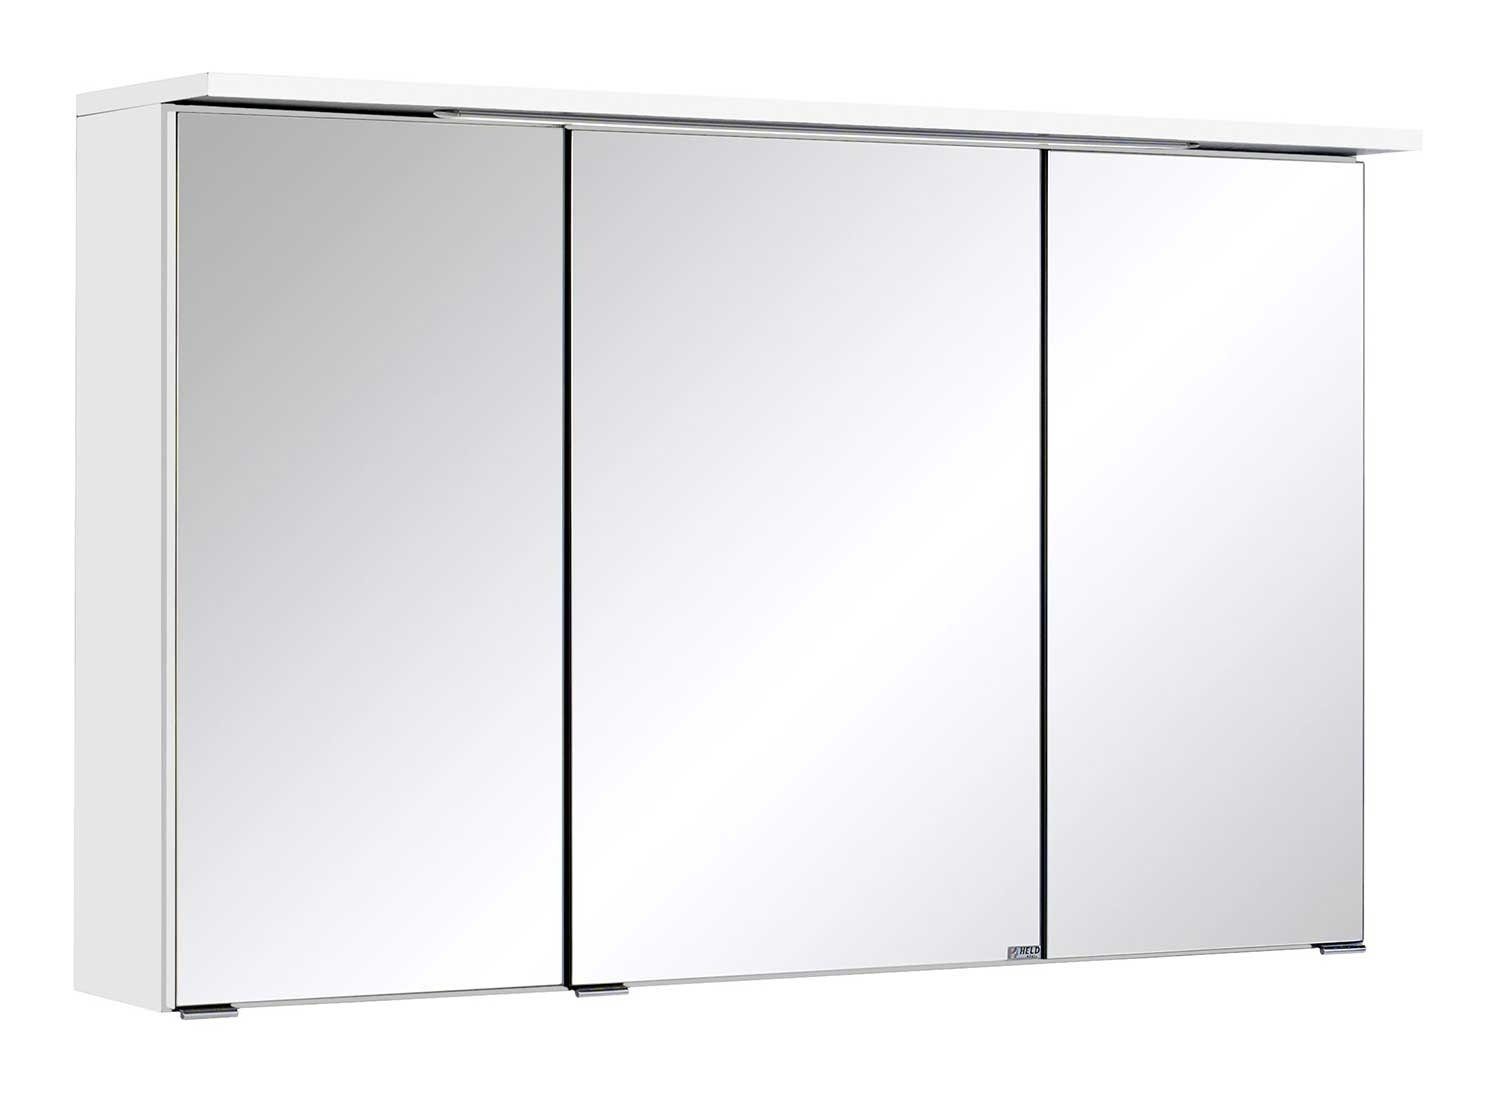 HELD MÖBEL Spiegelschrank MULTI, B 100 cm, Weiß, mit LED-Kranzbodenbeleuchtung